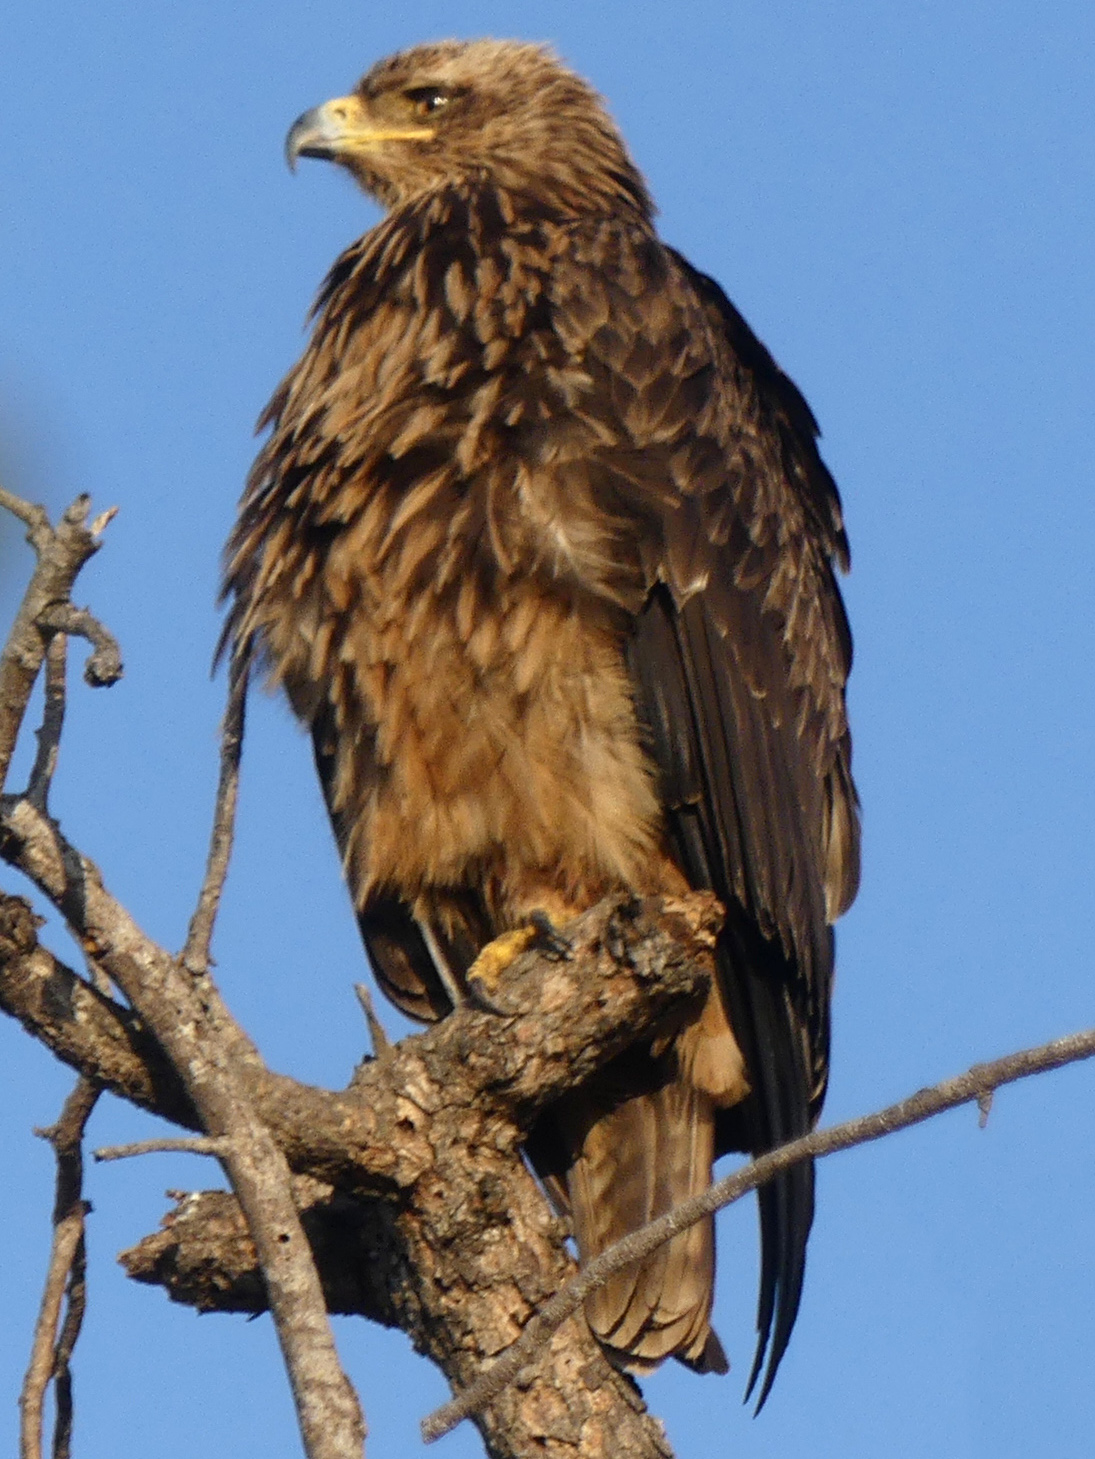 tawny eagle